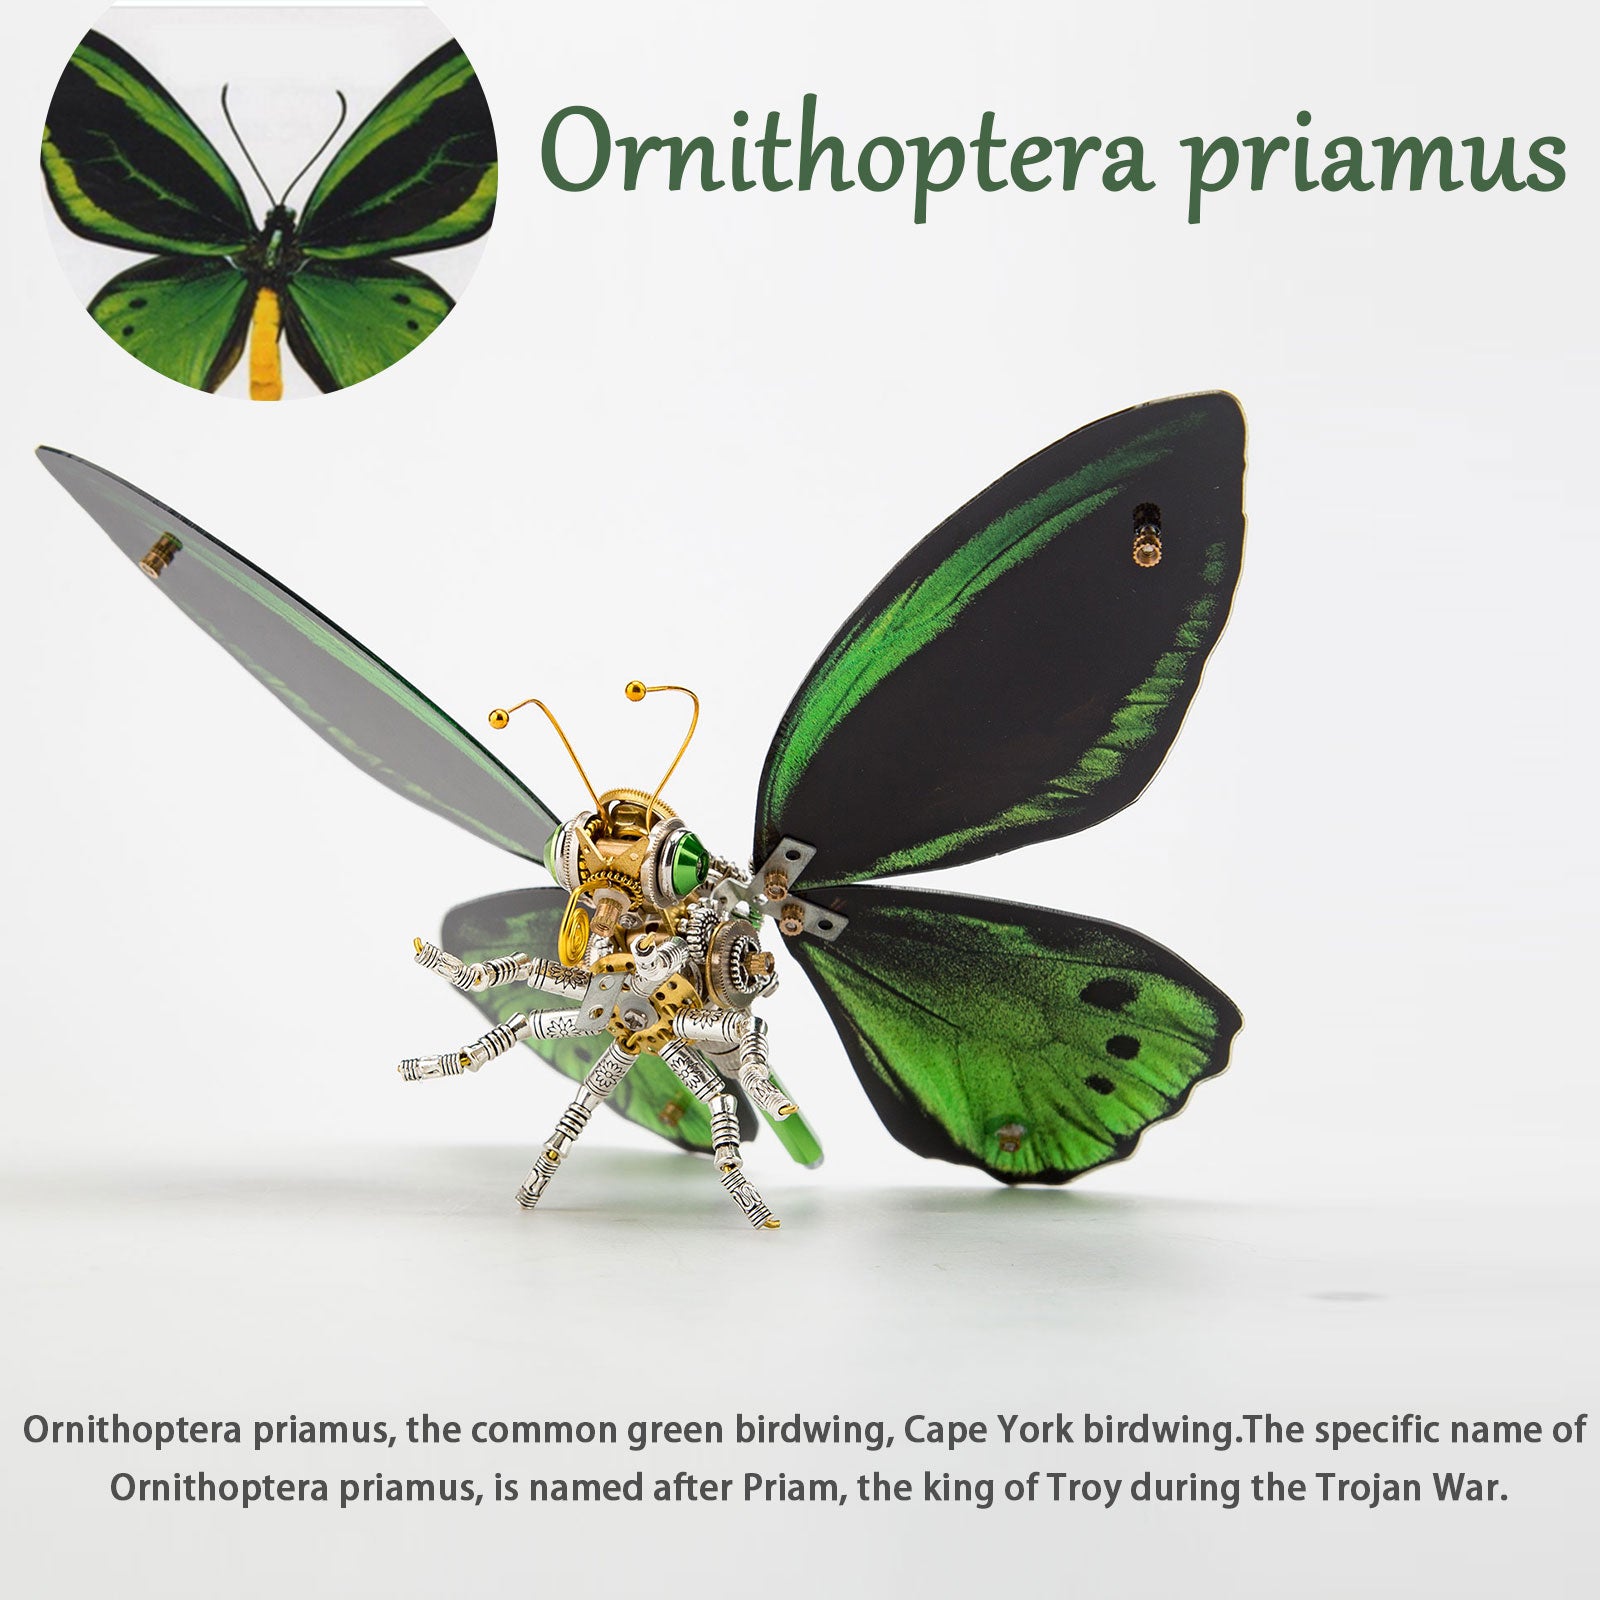 150PCS+ Steampunk 3D Metal Ornithoptera Priamus Model DIY Kits